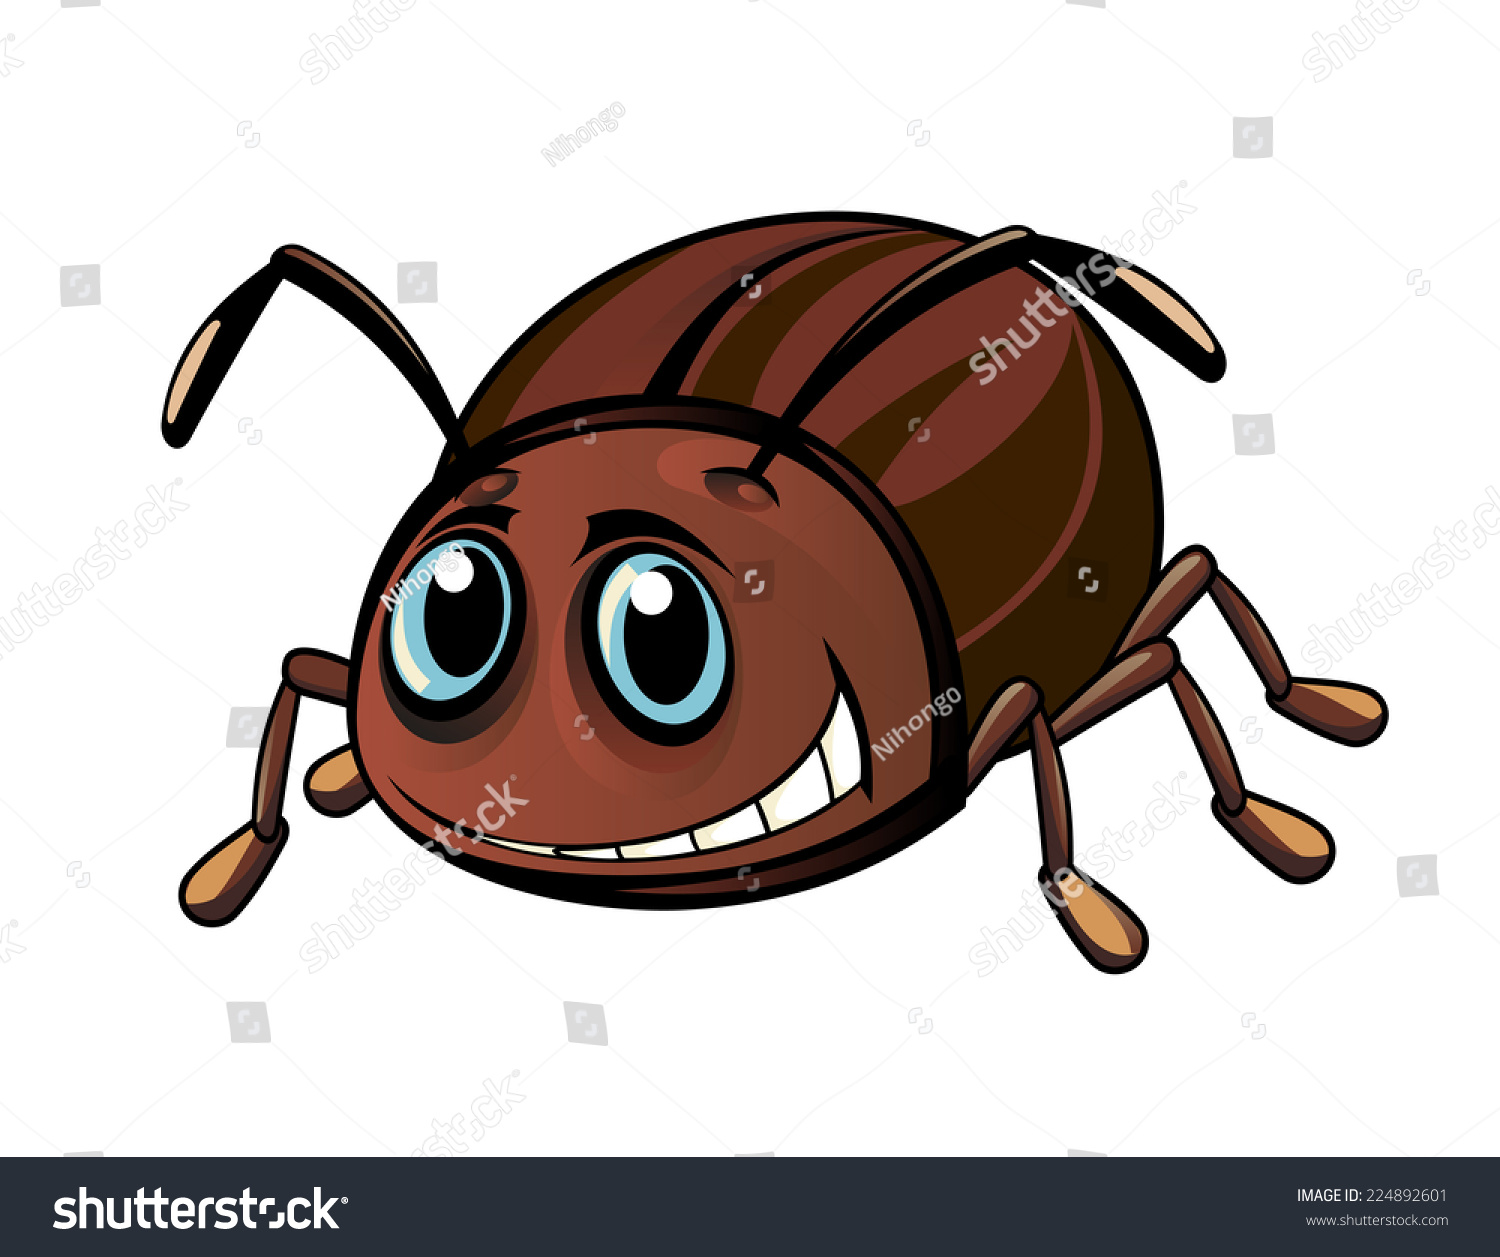 44,483 Beetle Cartoon Images, Stock Photos & Vectors Shutterstock